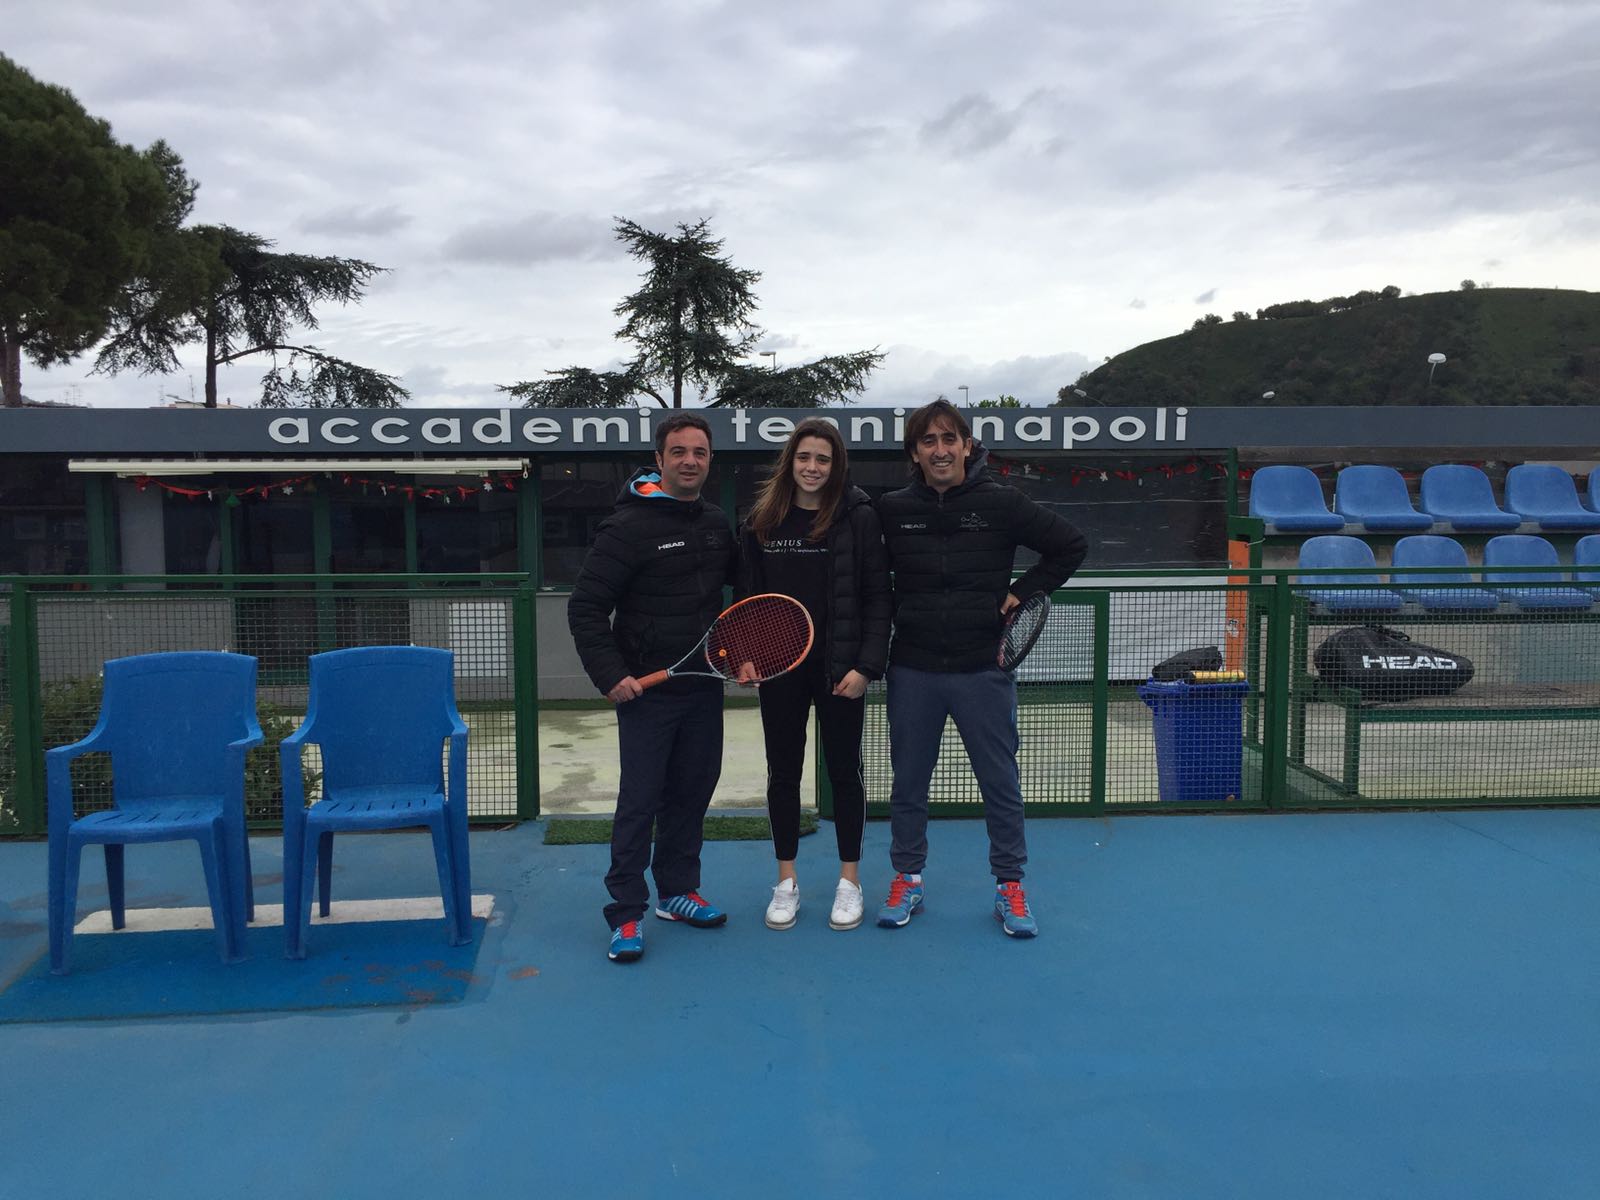 Accademia Tennis Napoli e Tennis Club Capri sempre più insieme per coltivare i talenti isolani Aversa, Testa e Staiano